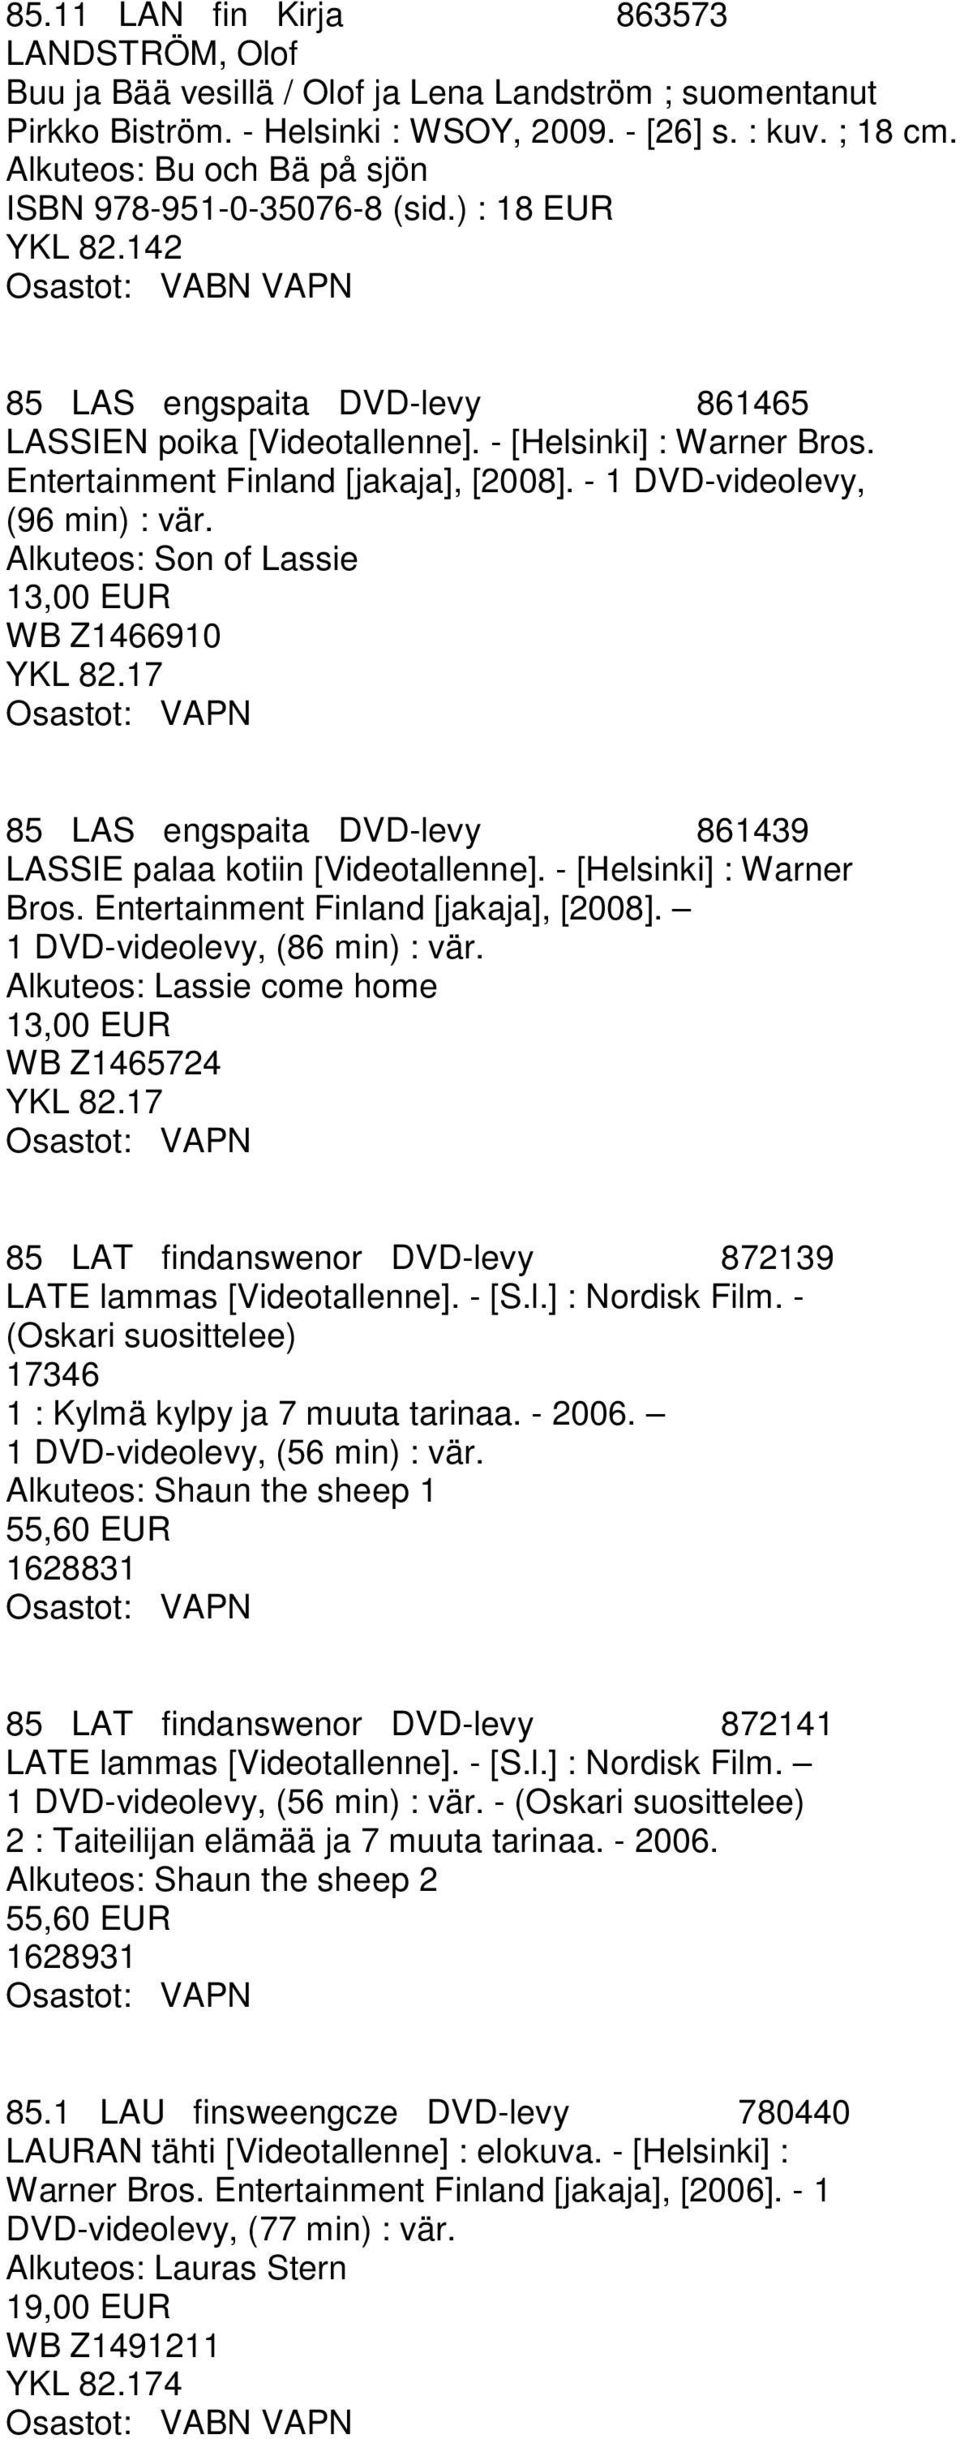 - 1 DVD-videolevy, (96 min) : vär. Alkuteos: Son of Lassie 13,00 EUR WB Z1466910 YKL 82.17 85 LAS engspaita DVD-levy 861439 LASSIE palaa kotiin [Videotallenne]. - [Helsinki] : Warner Bros.